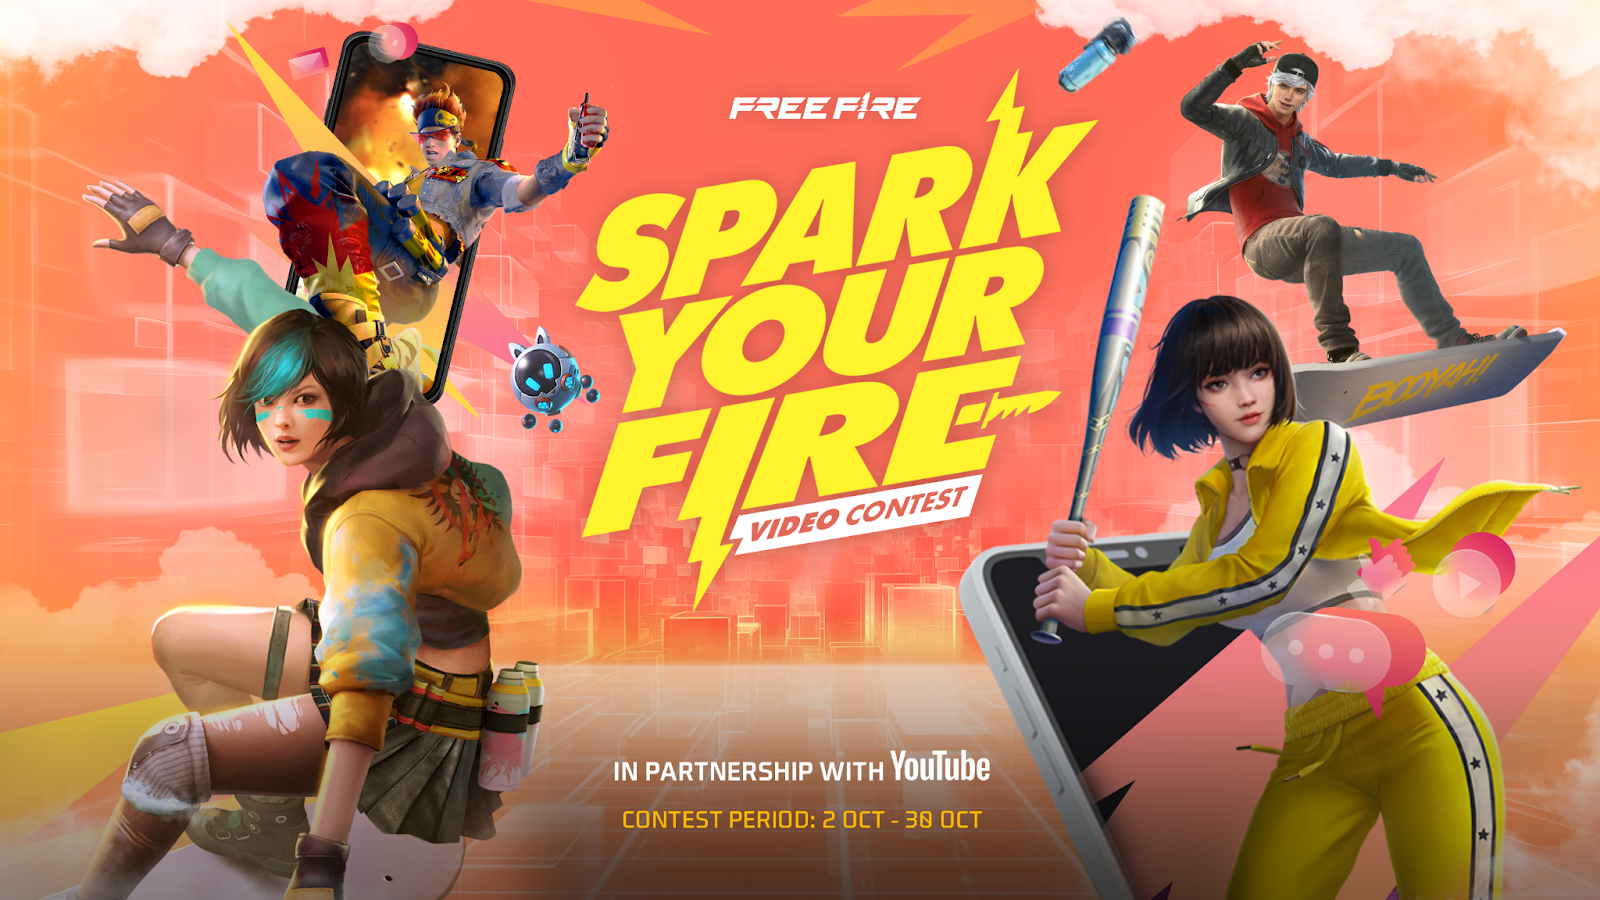 YouTube đồng hành cùng Free Fire công bố sân chơi cho nhà sáng tạo nội dung với giải thưởng 1,5 triệu USD - Ảnh 2.